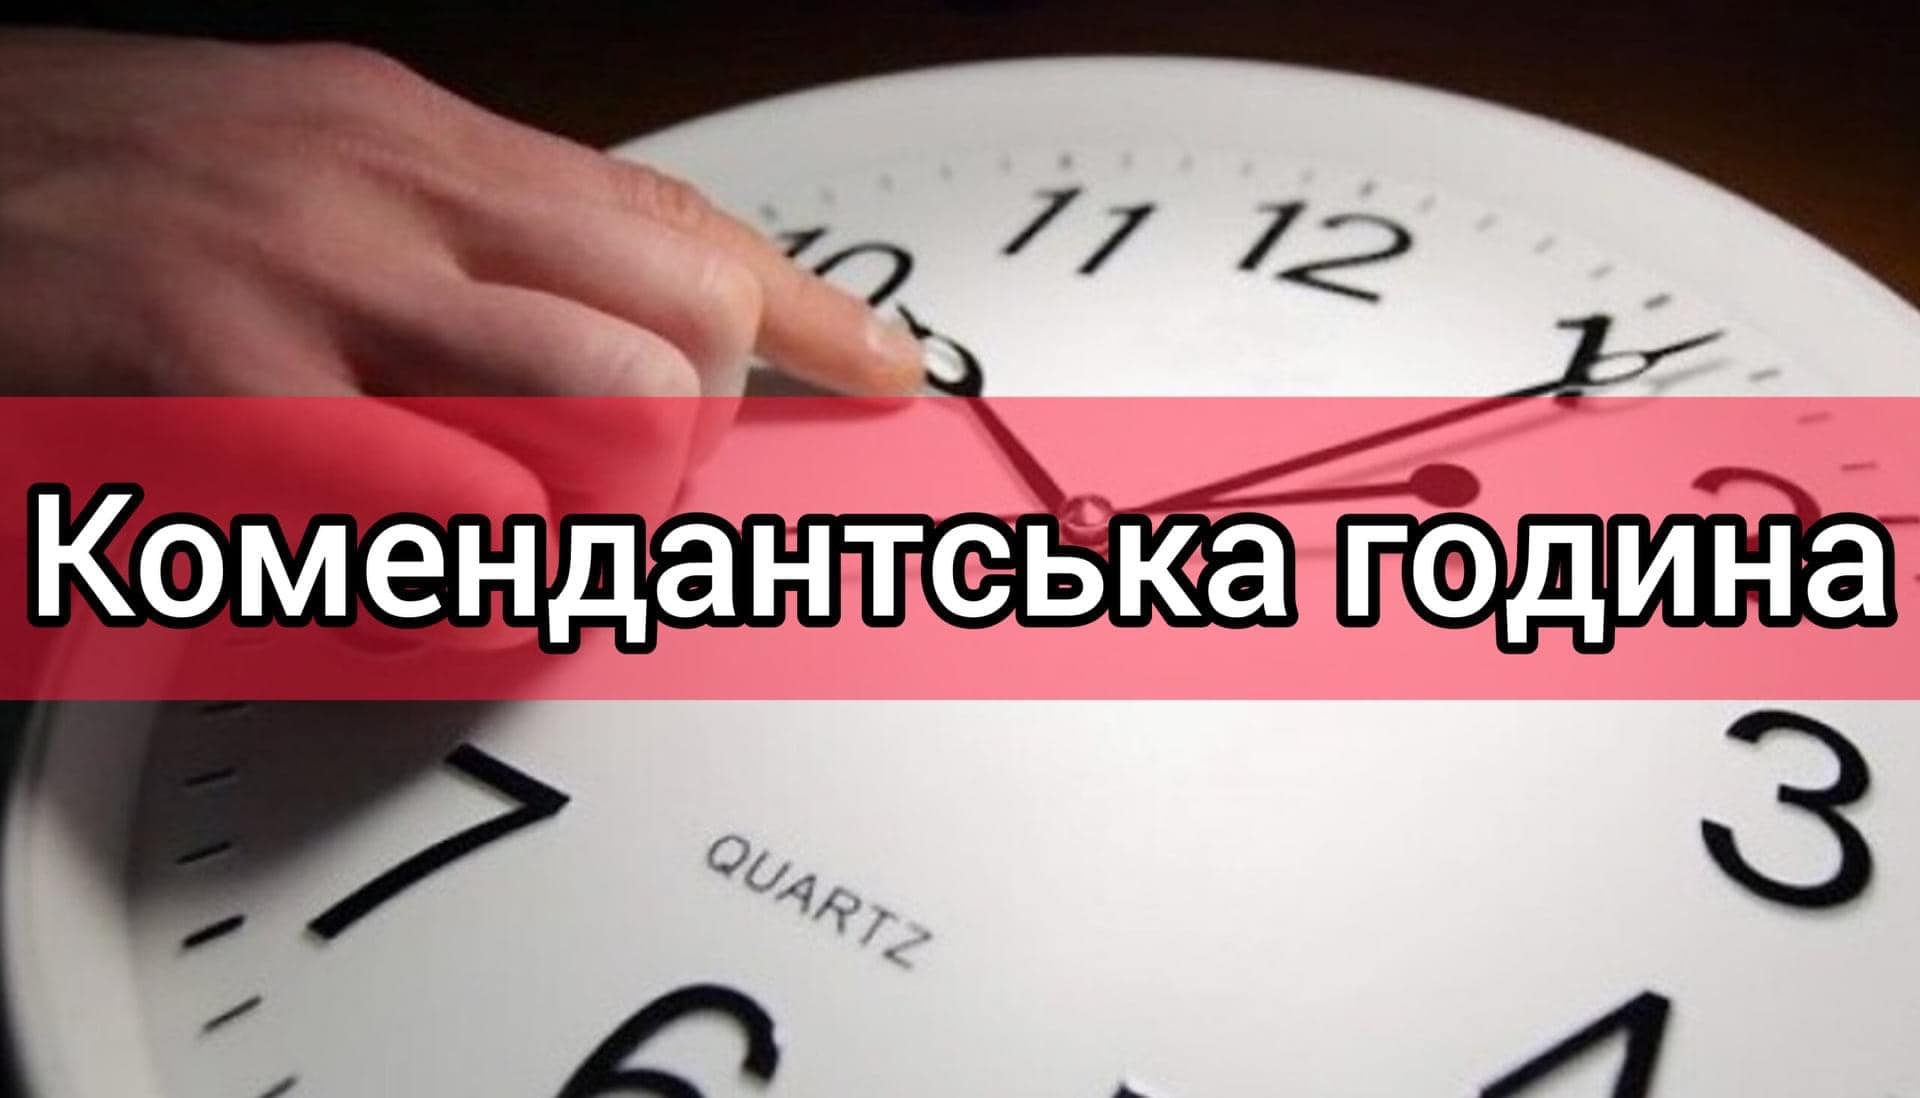 З 1 грудня комендантська година на Миколаївщині, окрім декількох громад, буде з 00:00 до 05:00 (ДОКУМЕНТ) 23